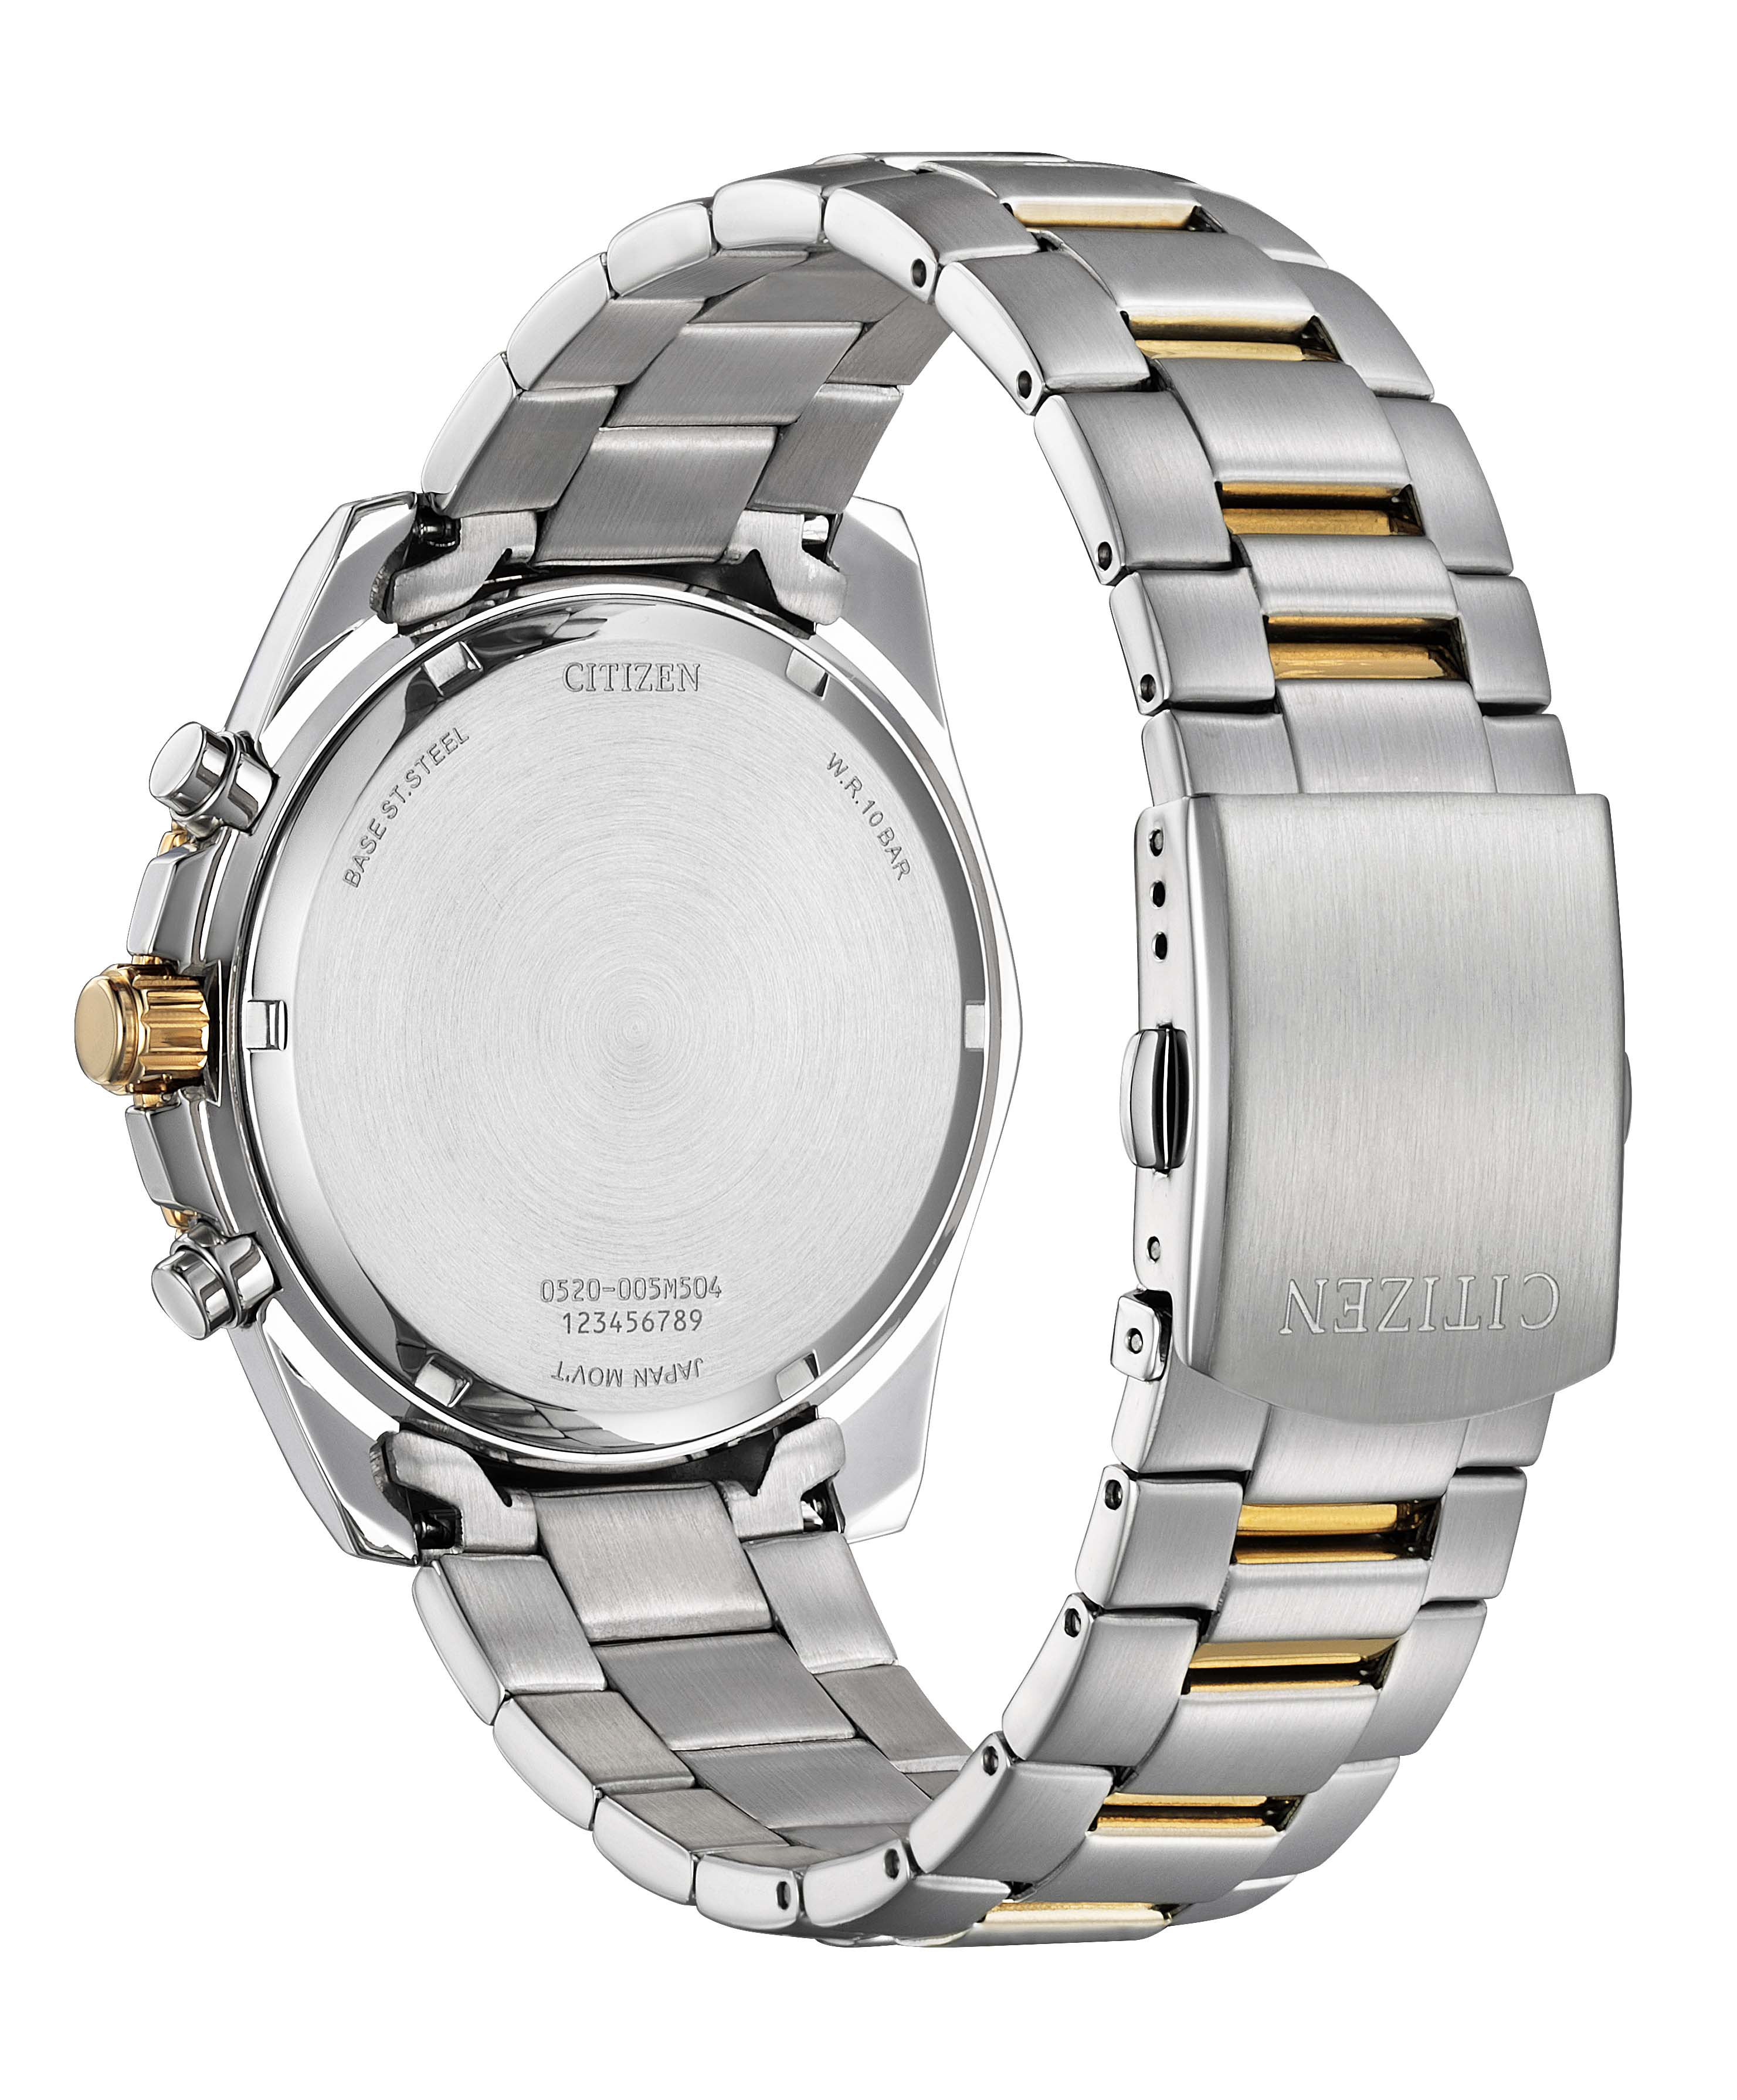 Citizen - AN8204-59X -  Quartz Chronograph Stainless Steel Watch For Men